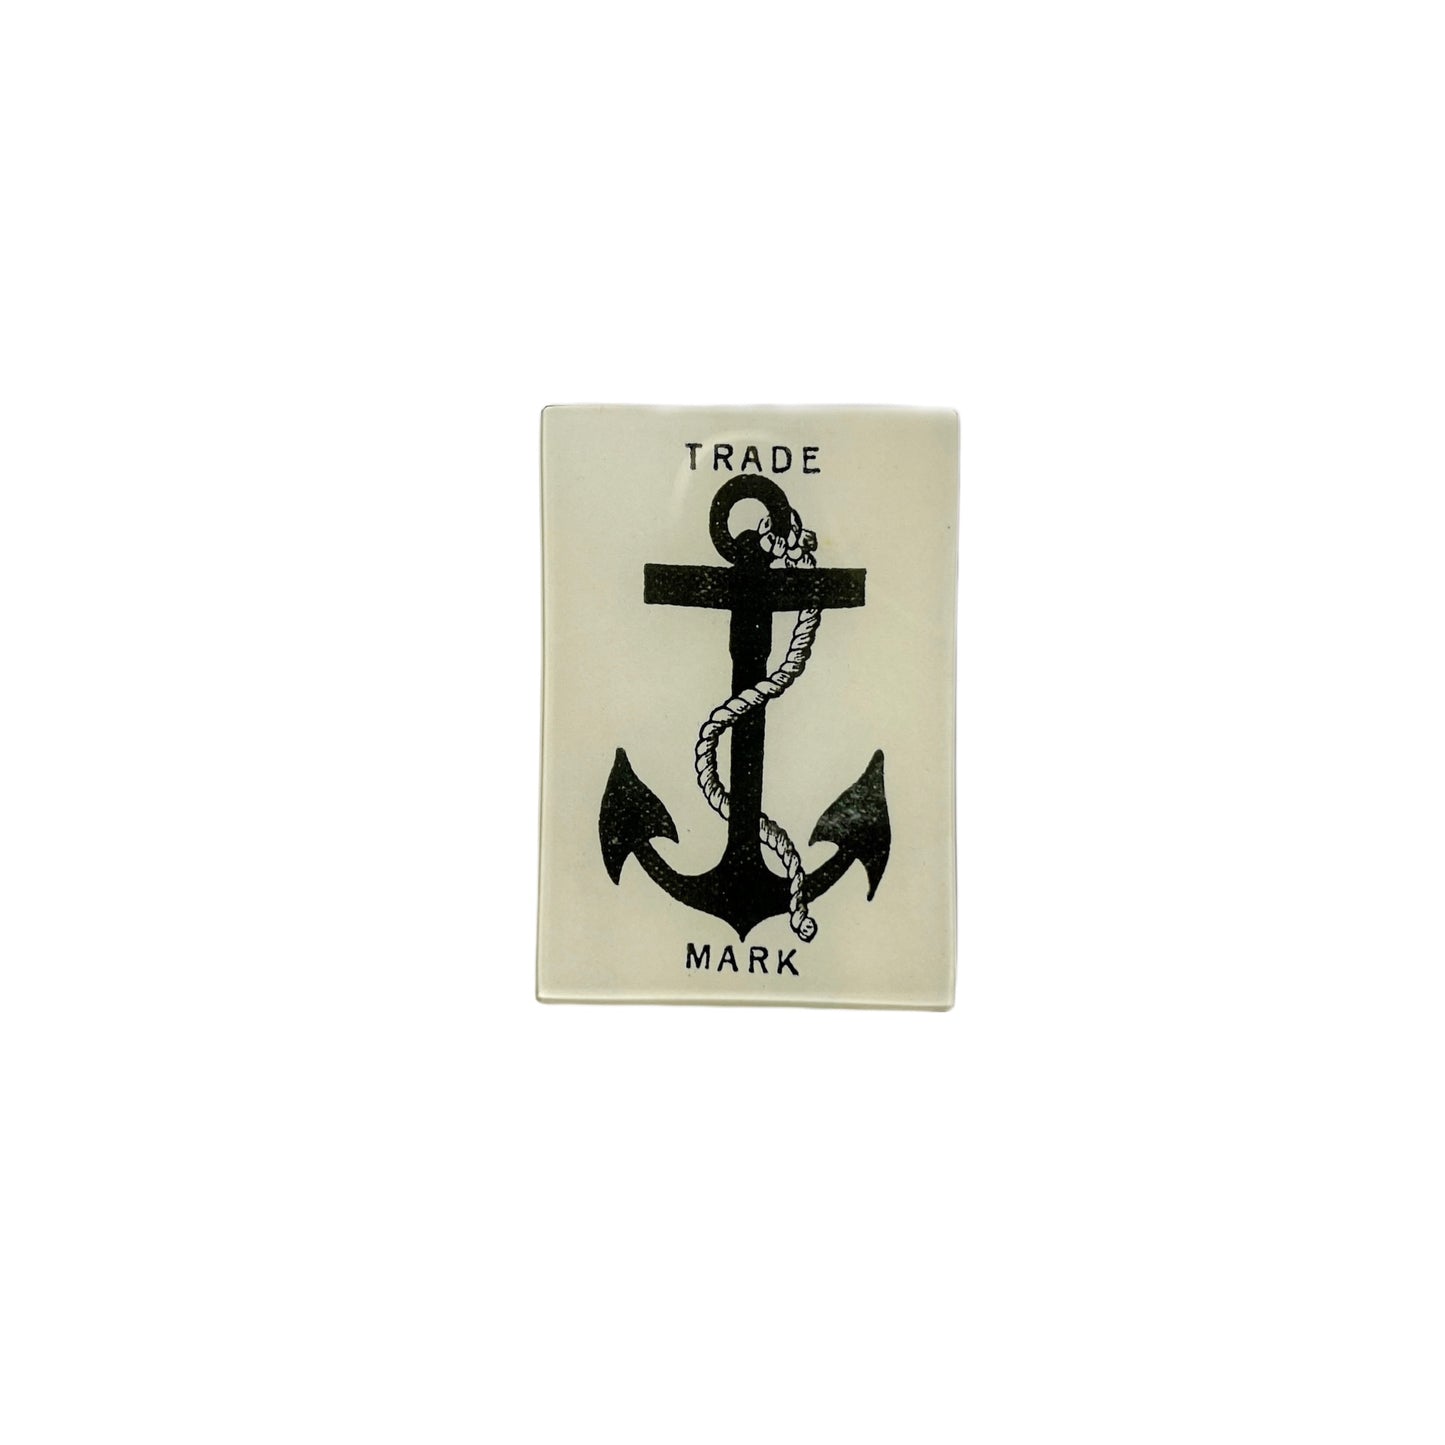 【JOHN DERIAN】デコパージュプレート Anchor Trademark